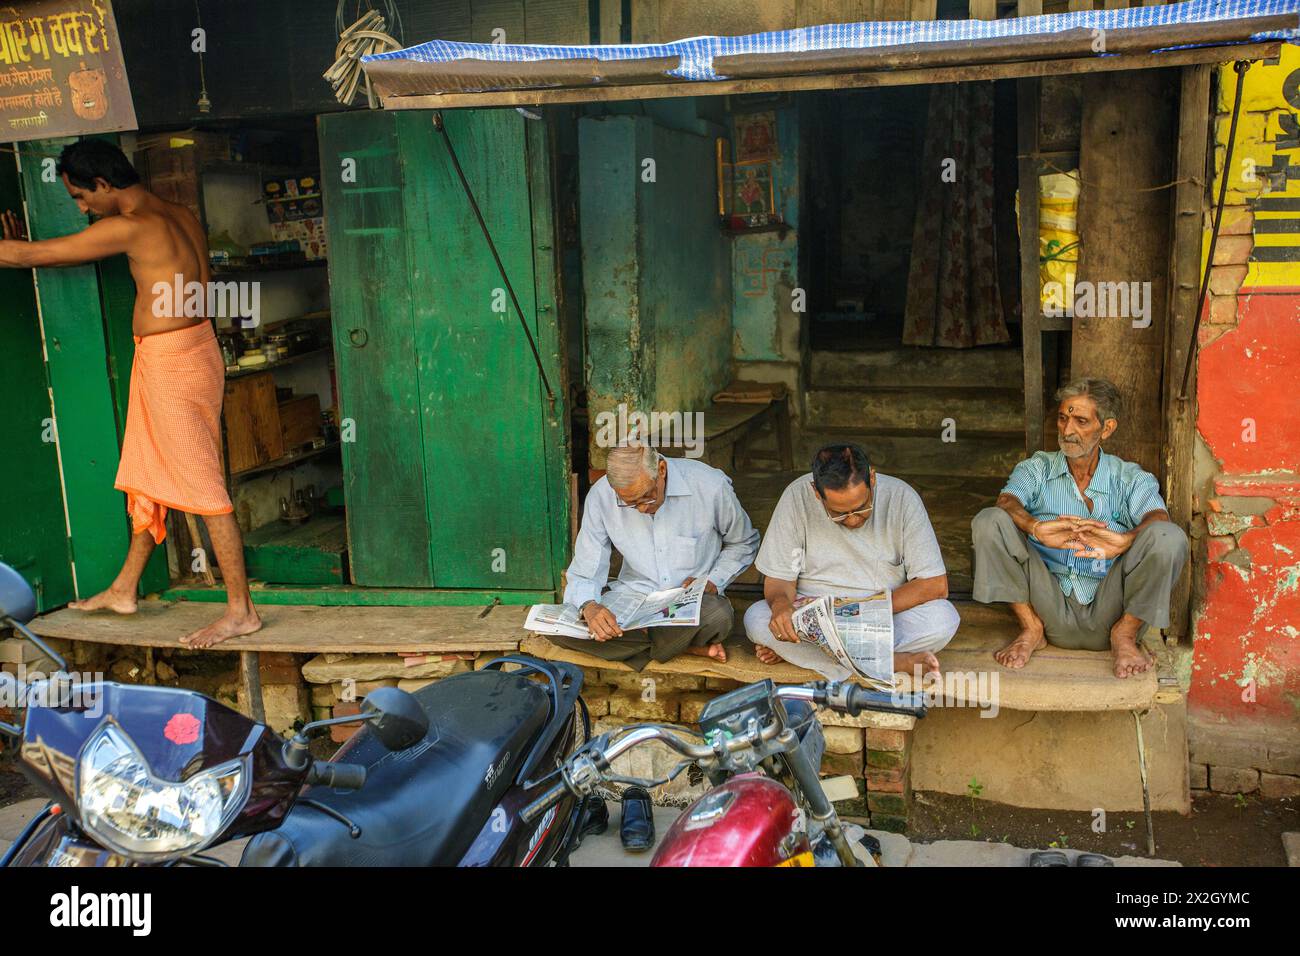 Des hommes lisant des journaux comme un homme portant un dhoti ouvre les volets de sa boutique à Varanasi, en Inde Banque D'Images